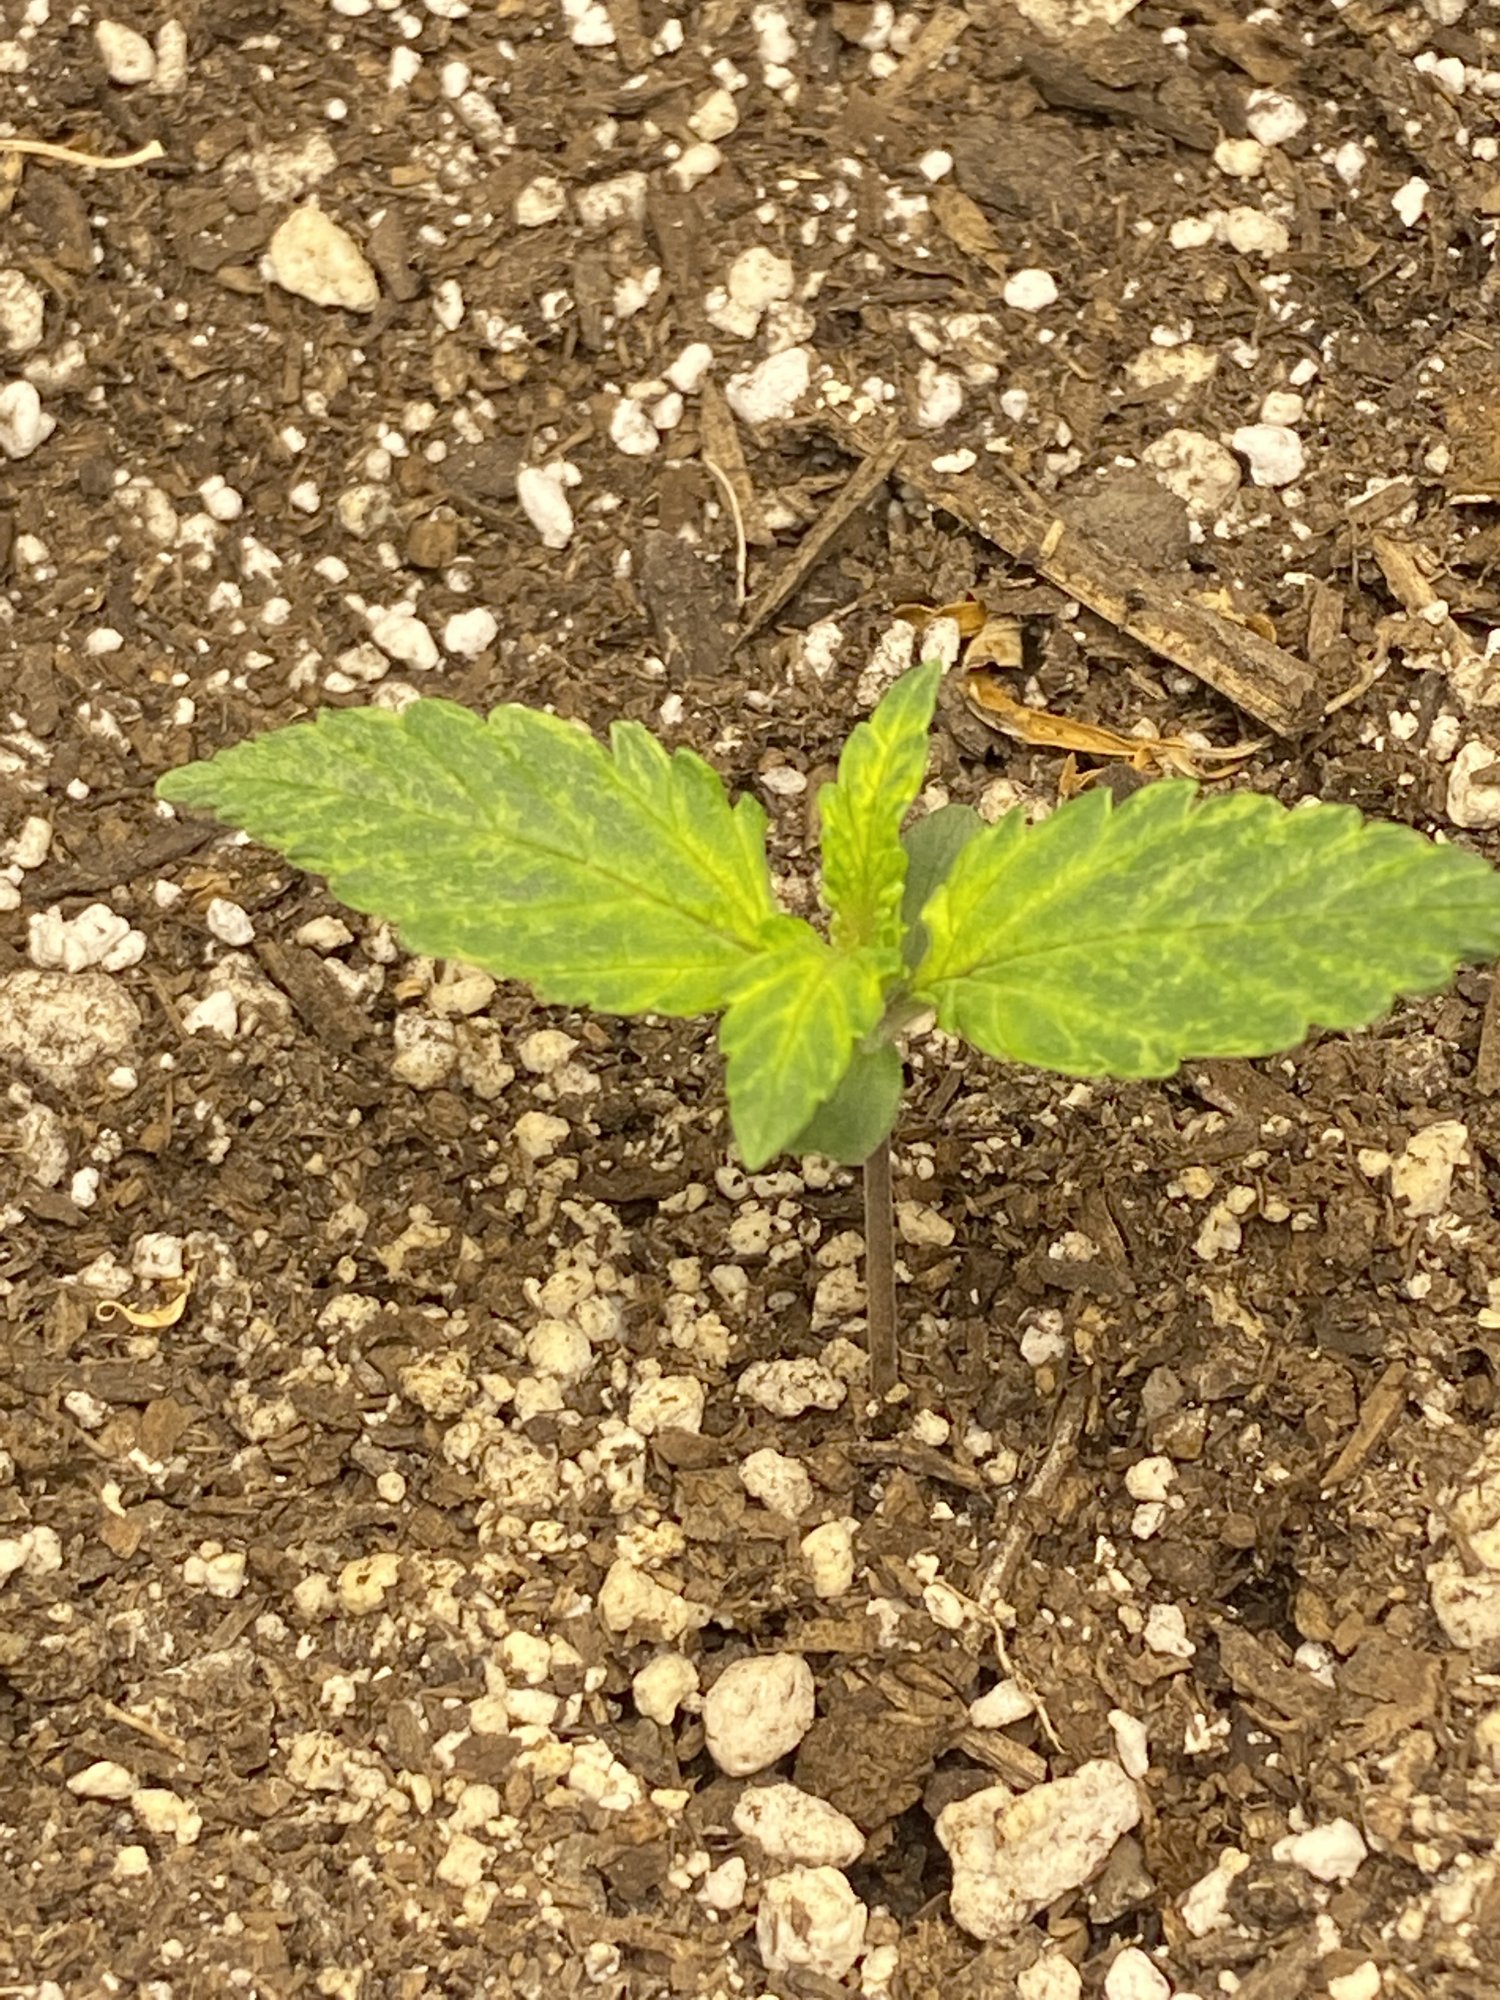 Should i be concerned seedlings